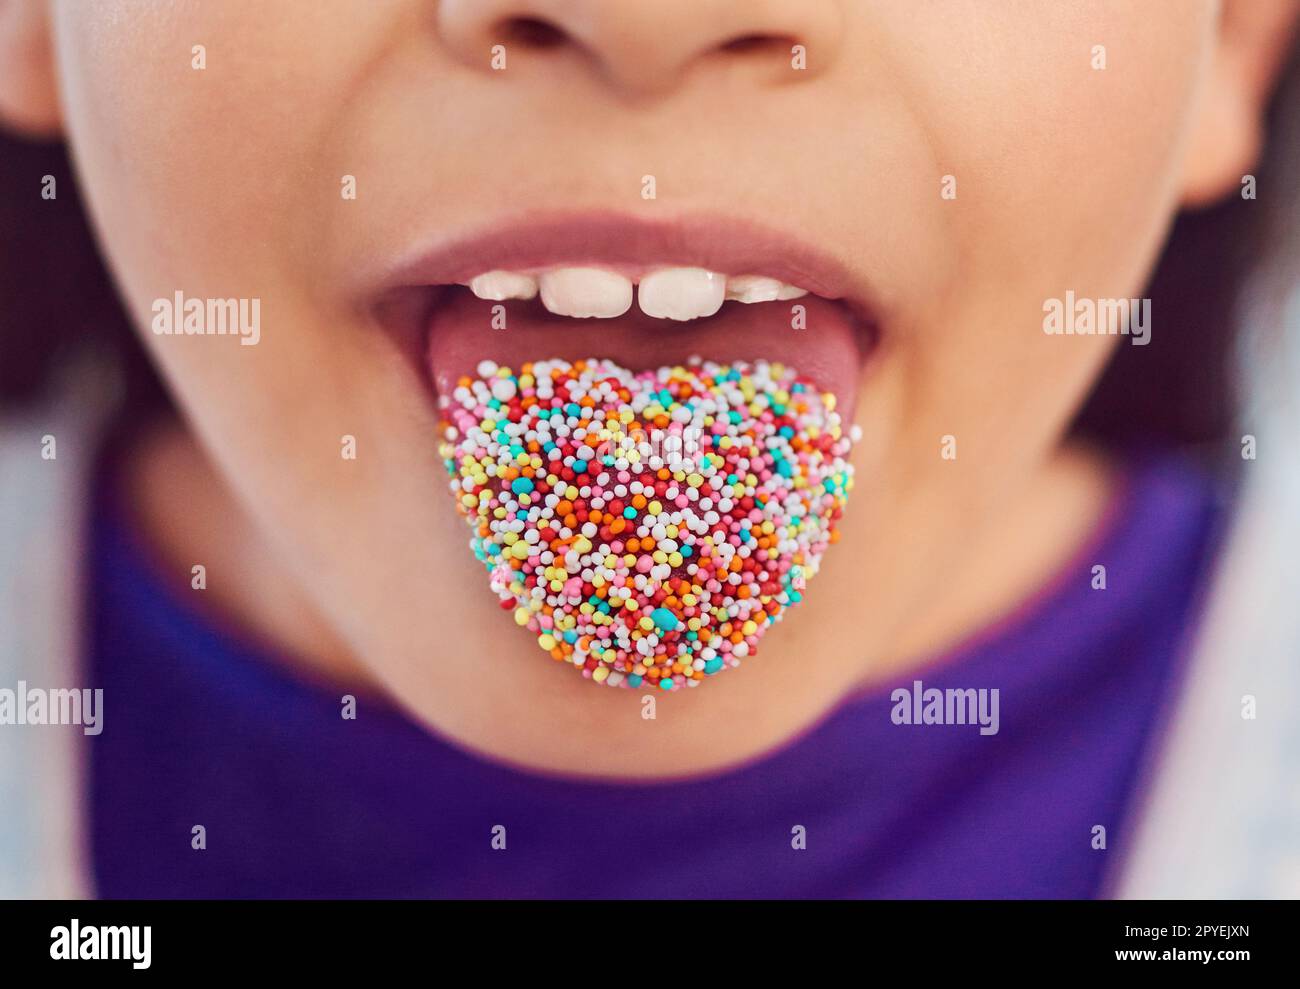 Bringen Sie Farbe in Ihr Leben. Ein unerkennbares kleines Mädchen, das zu Hause mit der Zunge posiert. Stockfoto